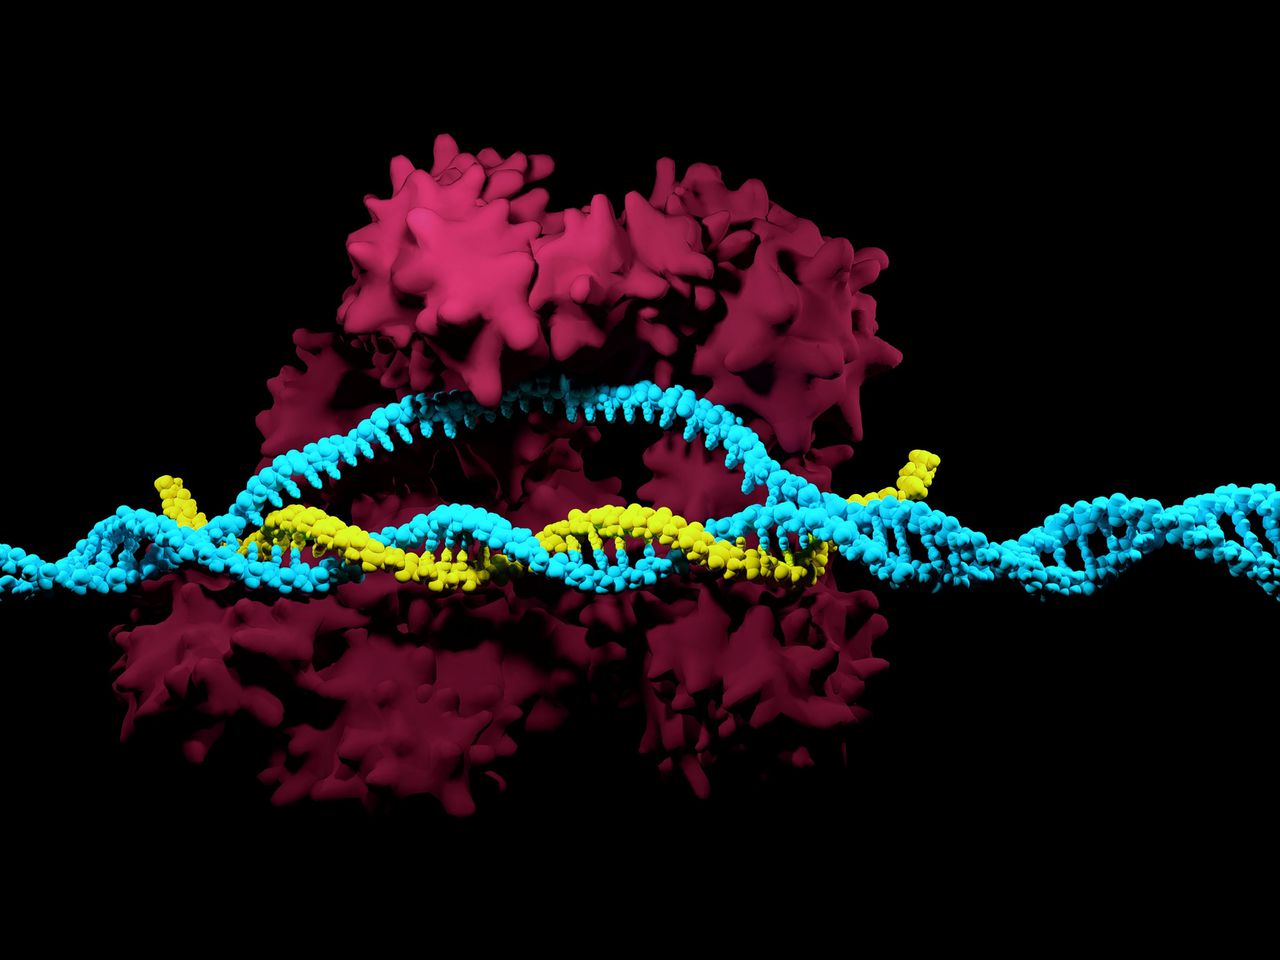 Weergave van DNA en eiwitten in het Crispr-systeem, waarmee genen veel uitgebreider geknipt en geplakt kunnen worden dan voorheen. Crispr-pionier Feng Zhang sprak in Davos over beloften en risico’s. Foto iStock